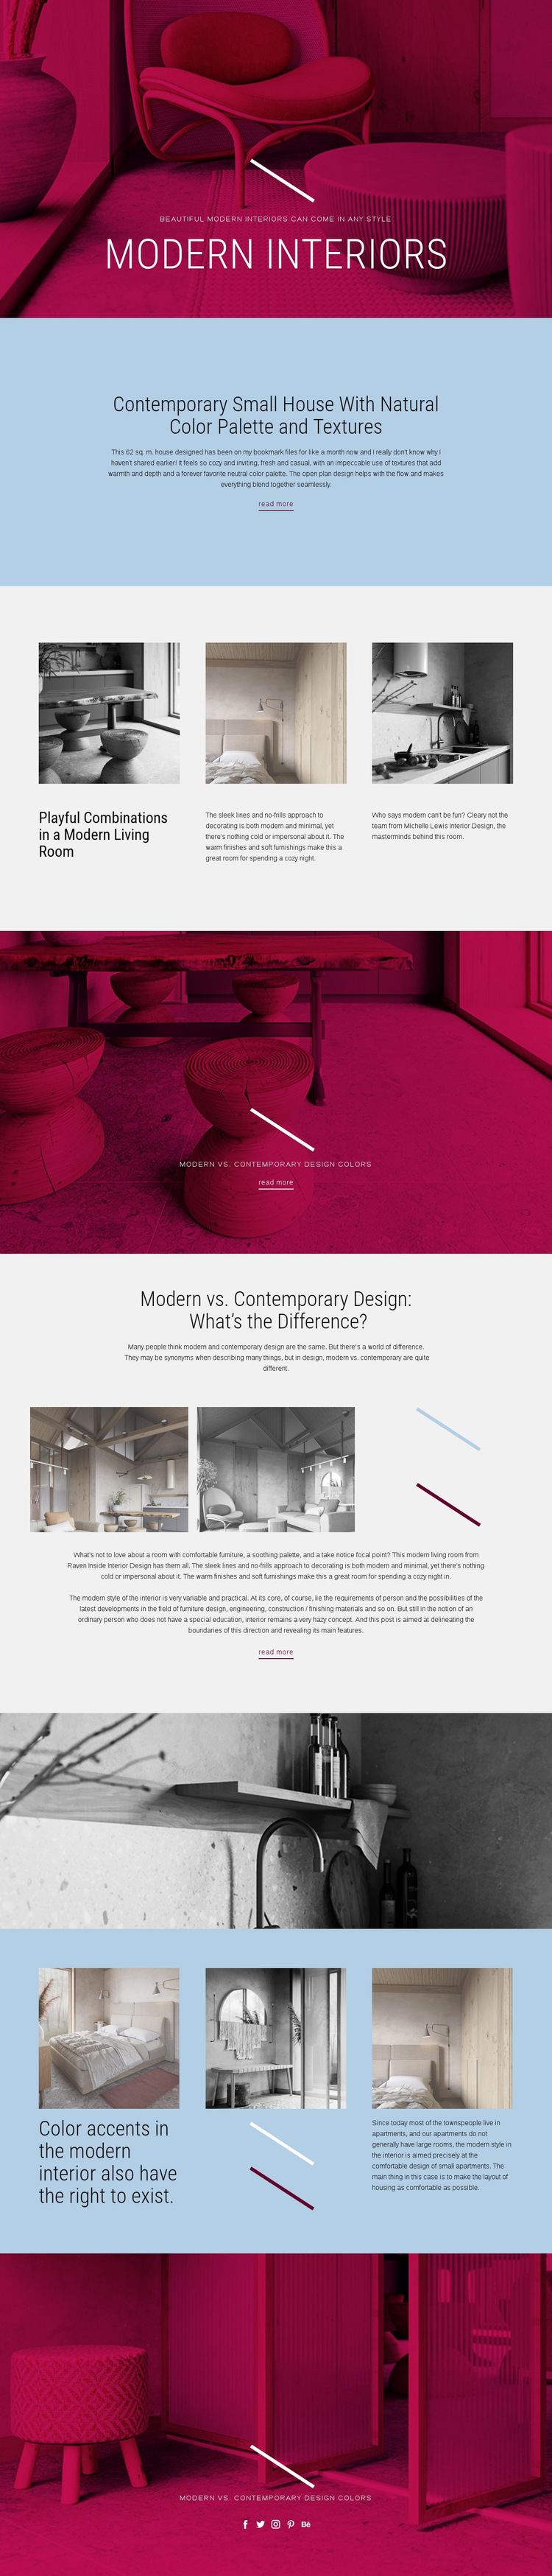 Art Nouveau furniture Web Page Design